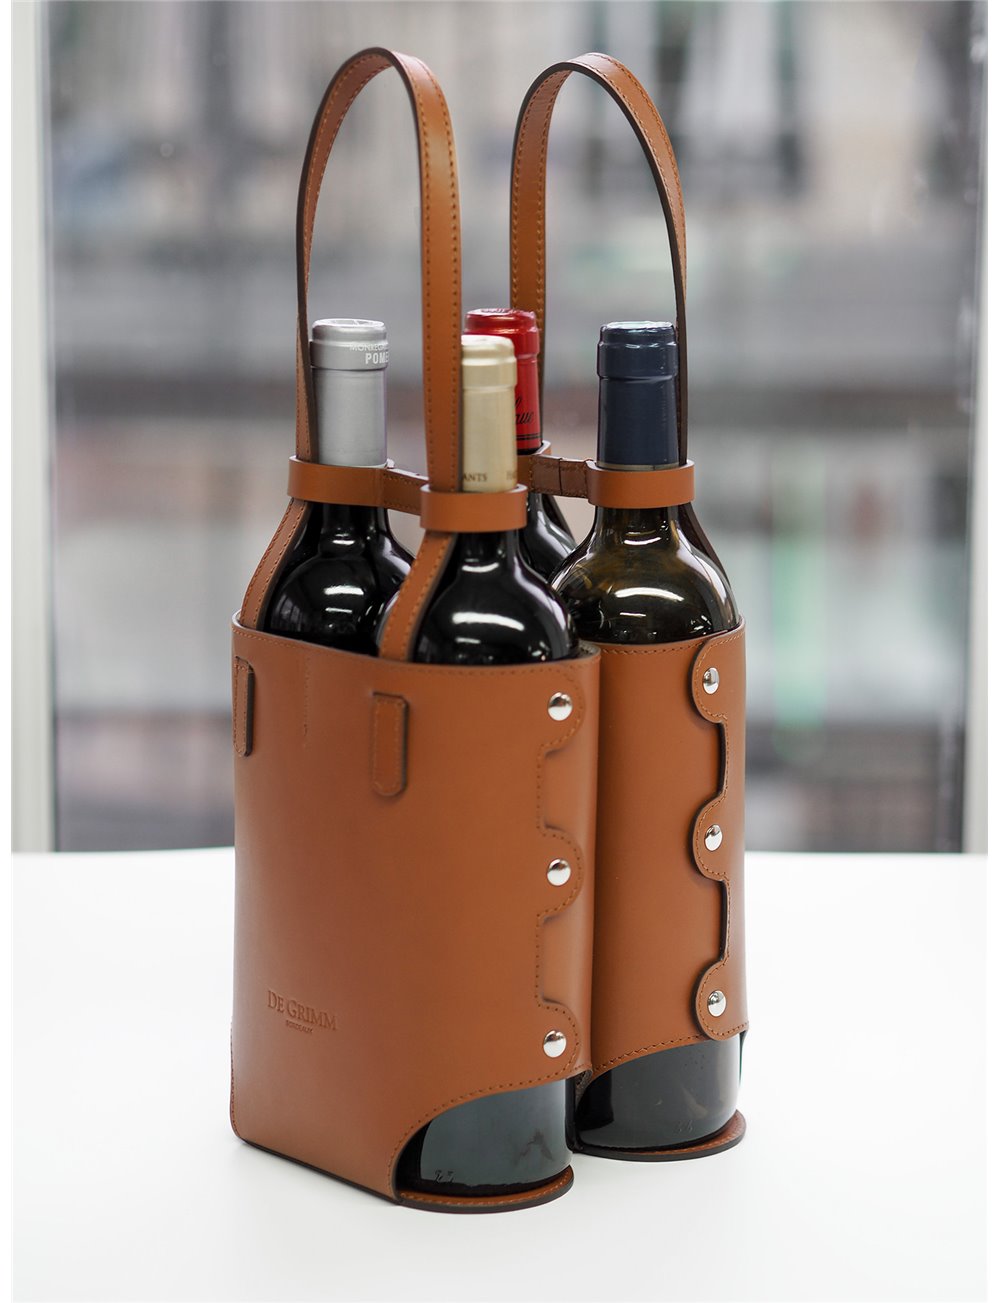 Luxurious leather quatuor bottle carrier